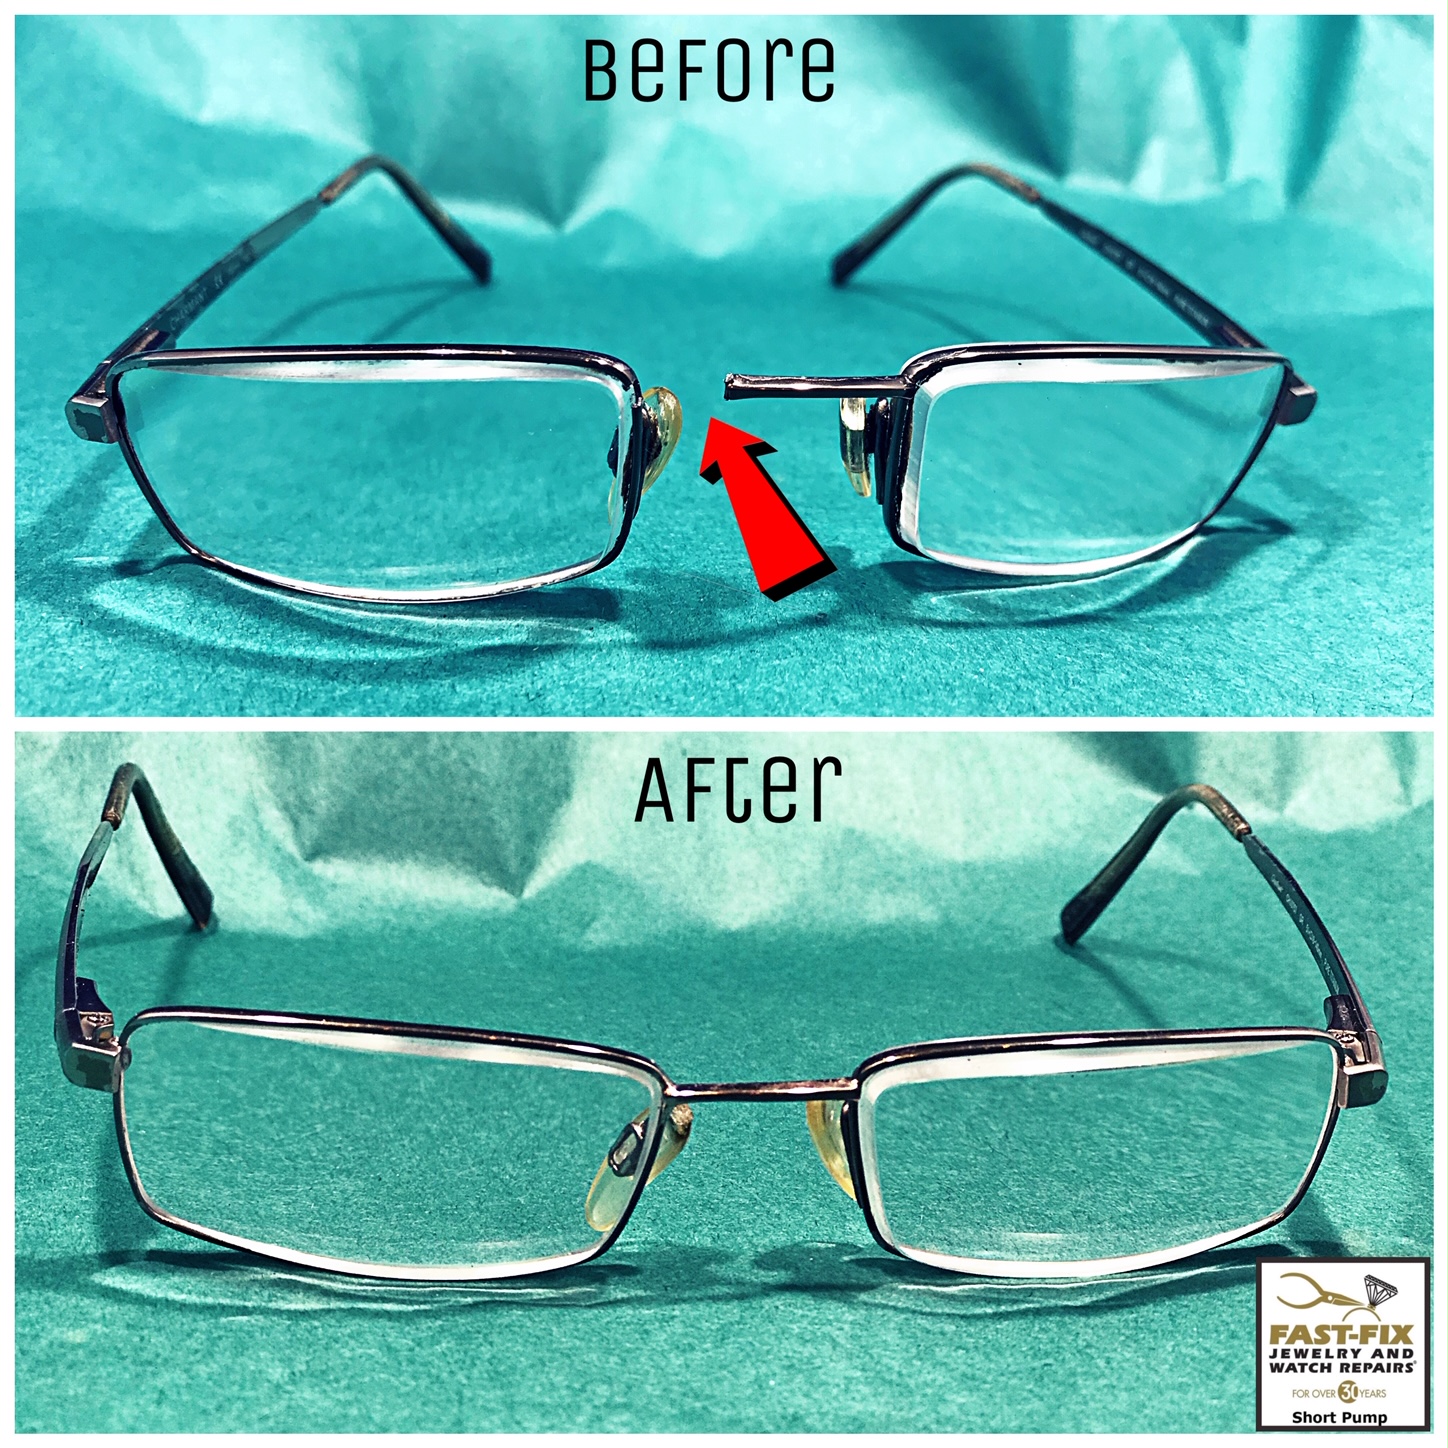 We can repair broken eyeglass frames